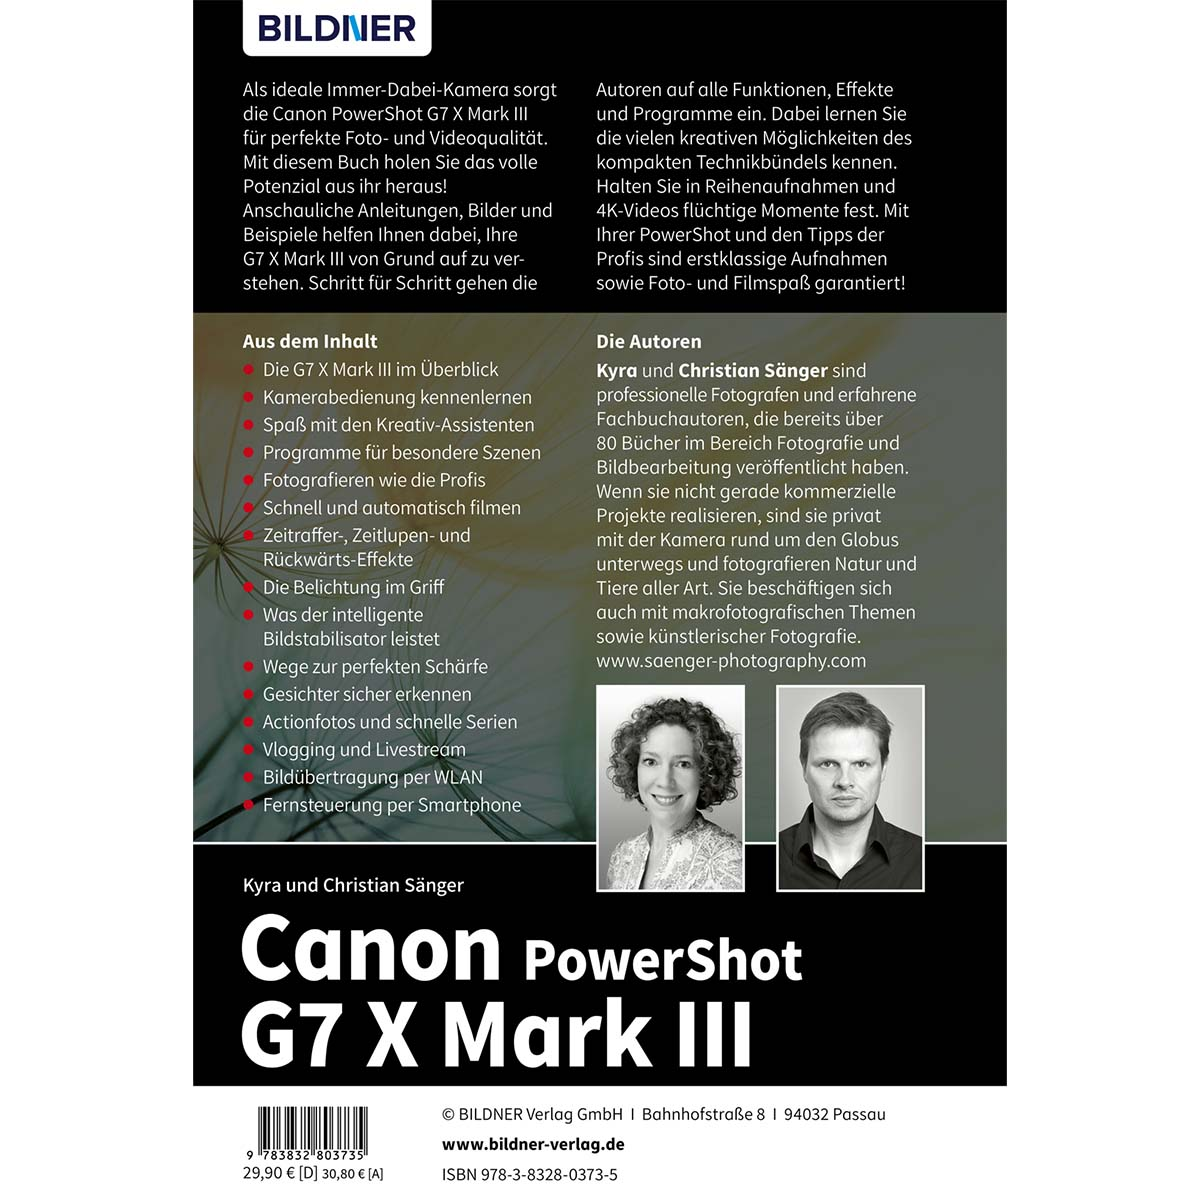 Mark Kamera! zu III Praxisbuch Ihrer Das Canon G7X - PowerShot umfangreiche